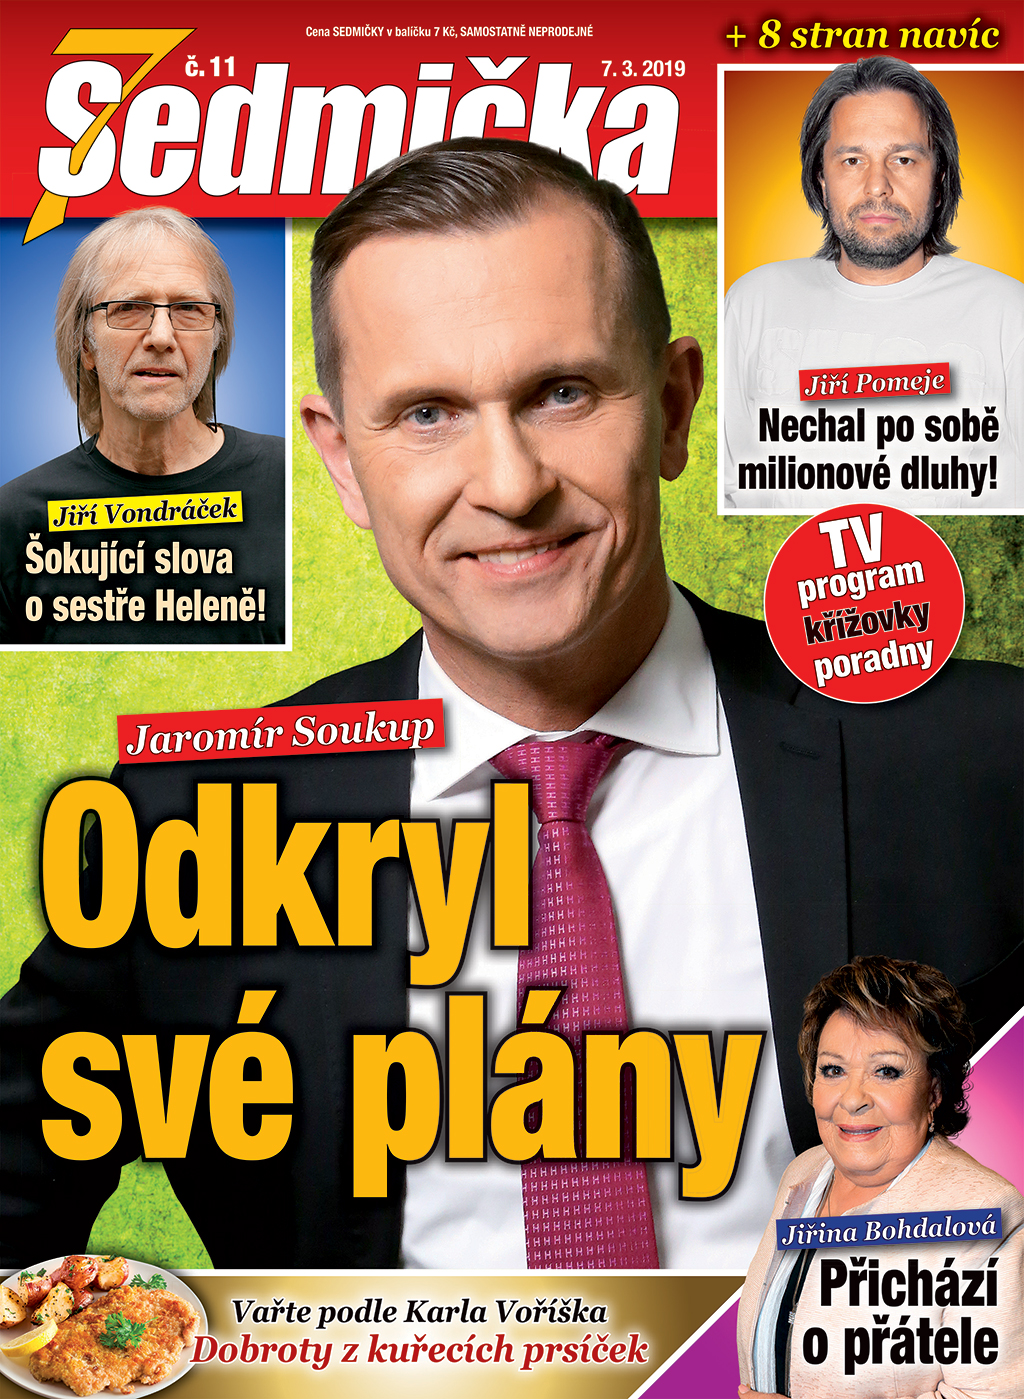 Aktuální číslo časopisu SEDMIČKA.